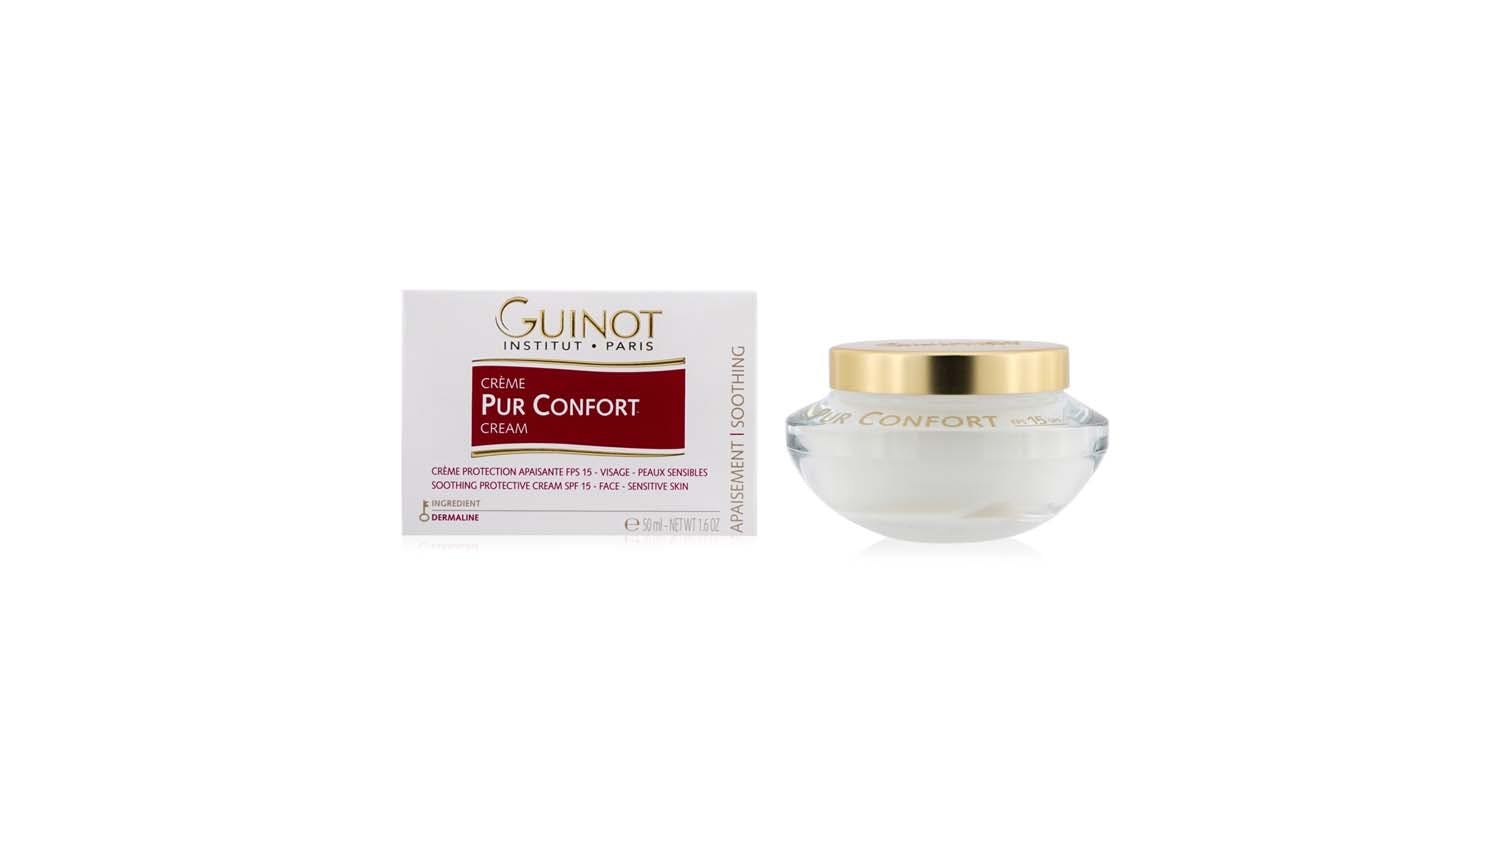 Guinot Creme Pur Confort Comfort Face Cream SPF 15 - 50ml/1.6oz